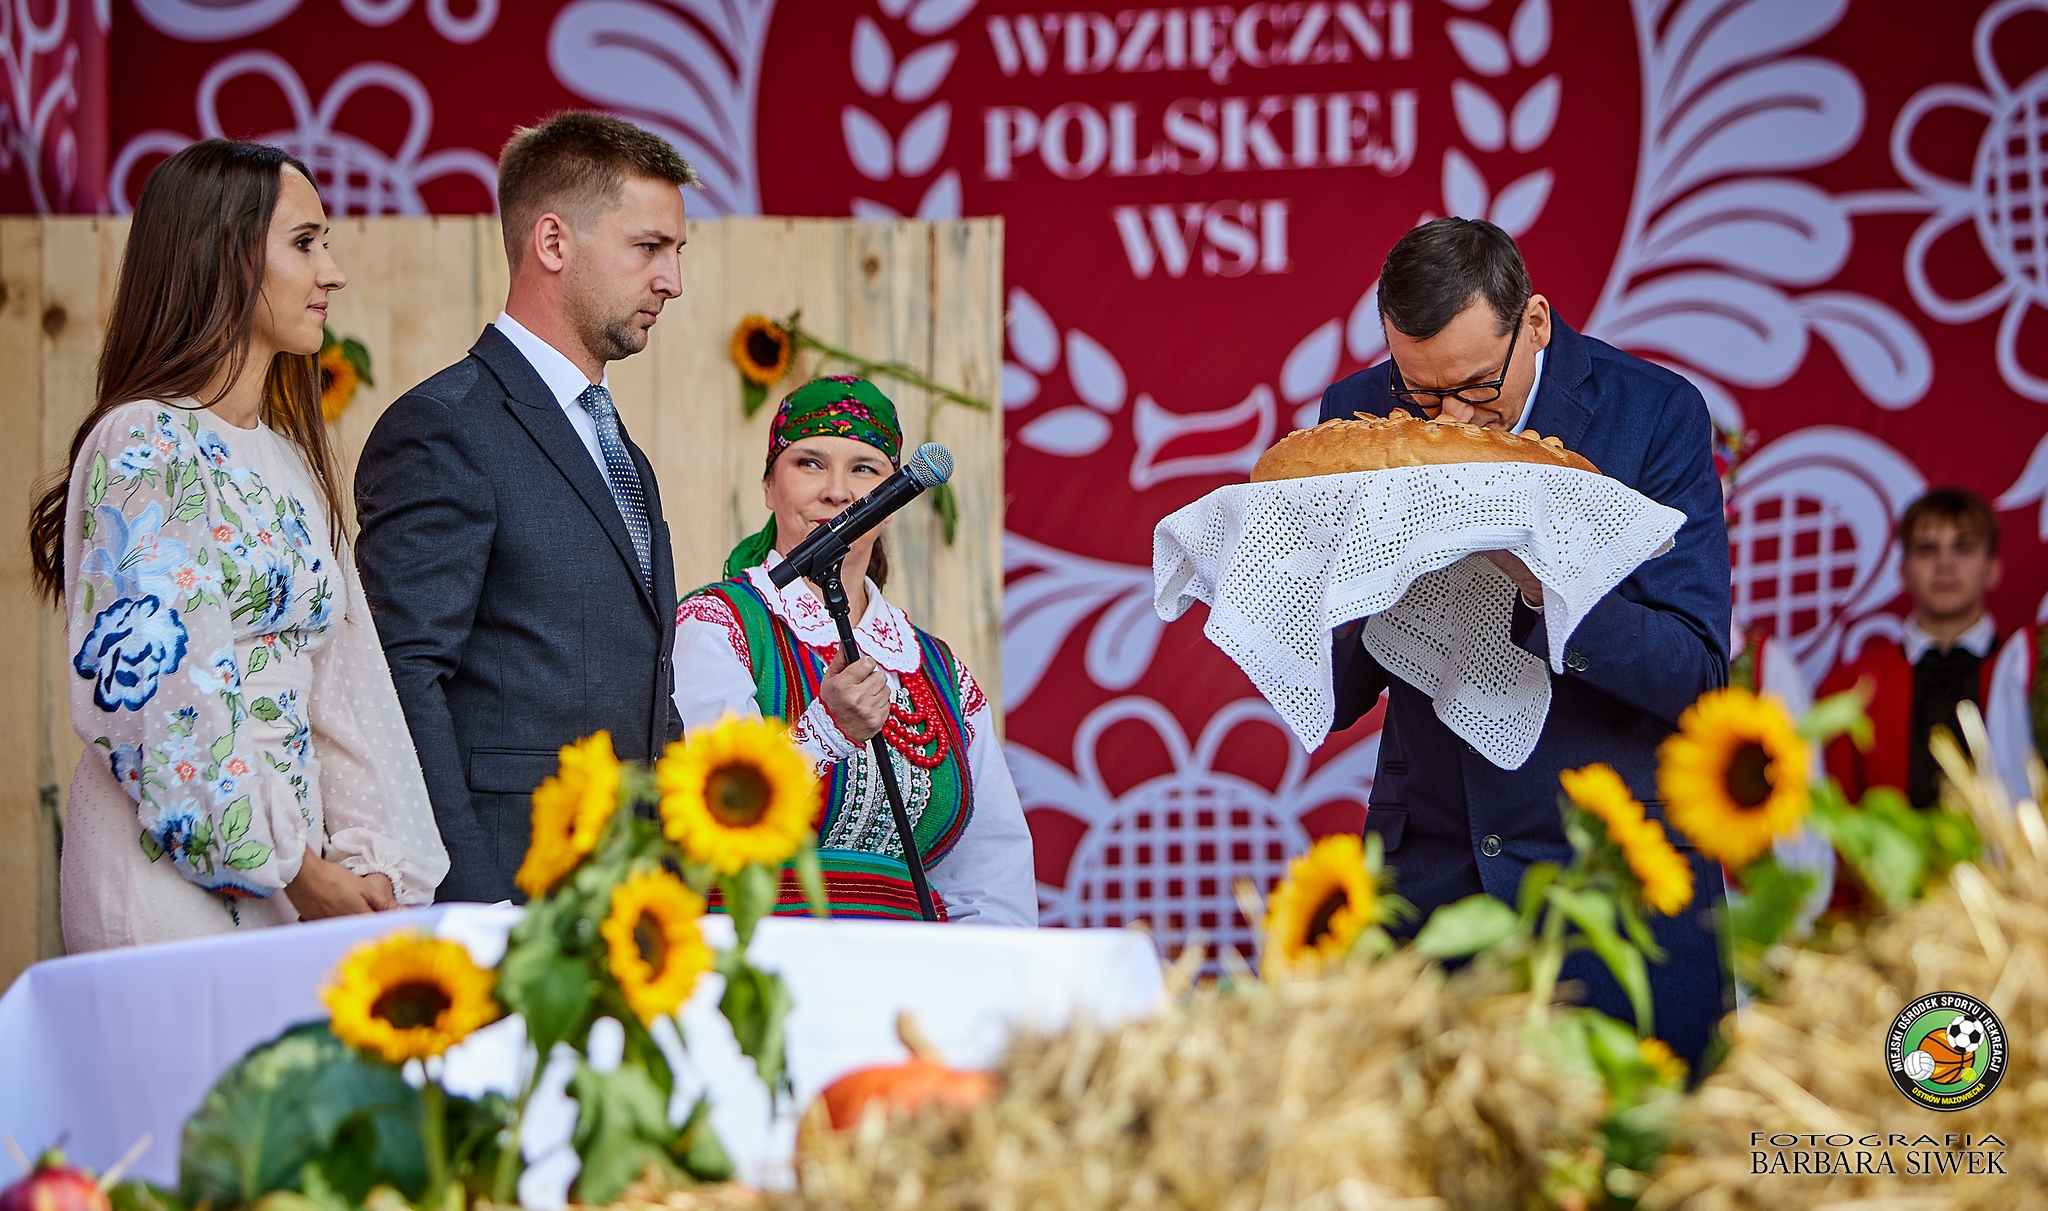 Starostowie dożynek, Aneta i Jędrzej Drewnowscy, przekazują na ręce Premiera Mateusza Morawieckiego chleb upieczony z tegorocznych zbiorów, symbol pracy rolnika. 